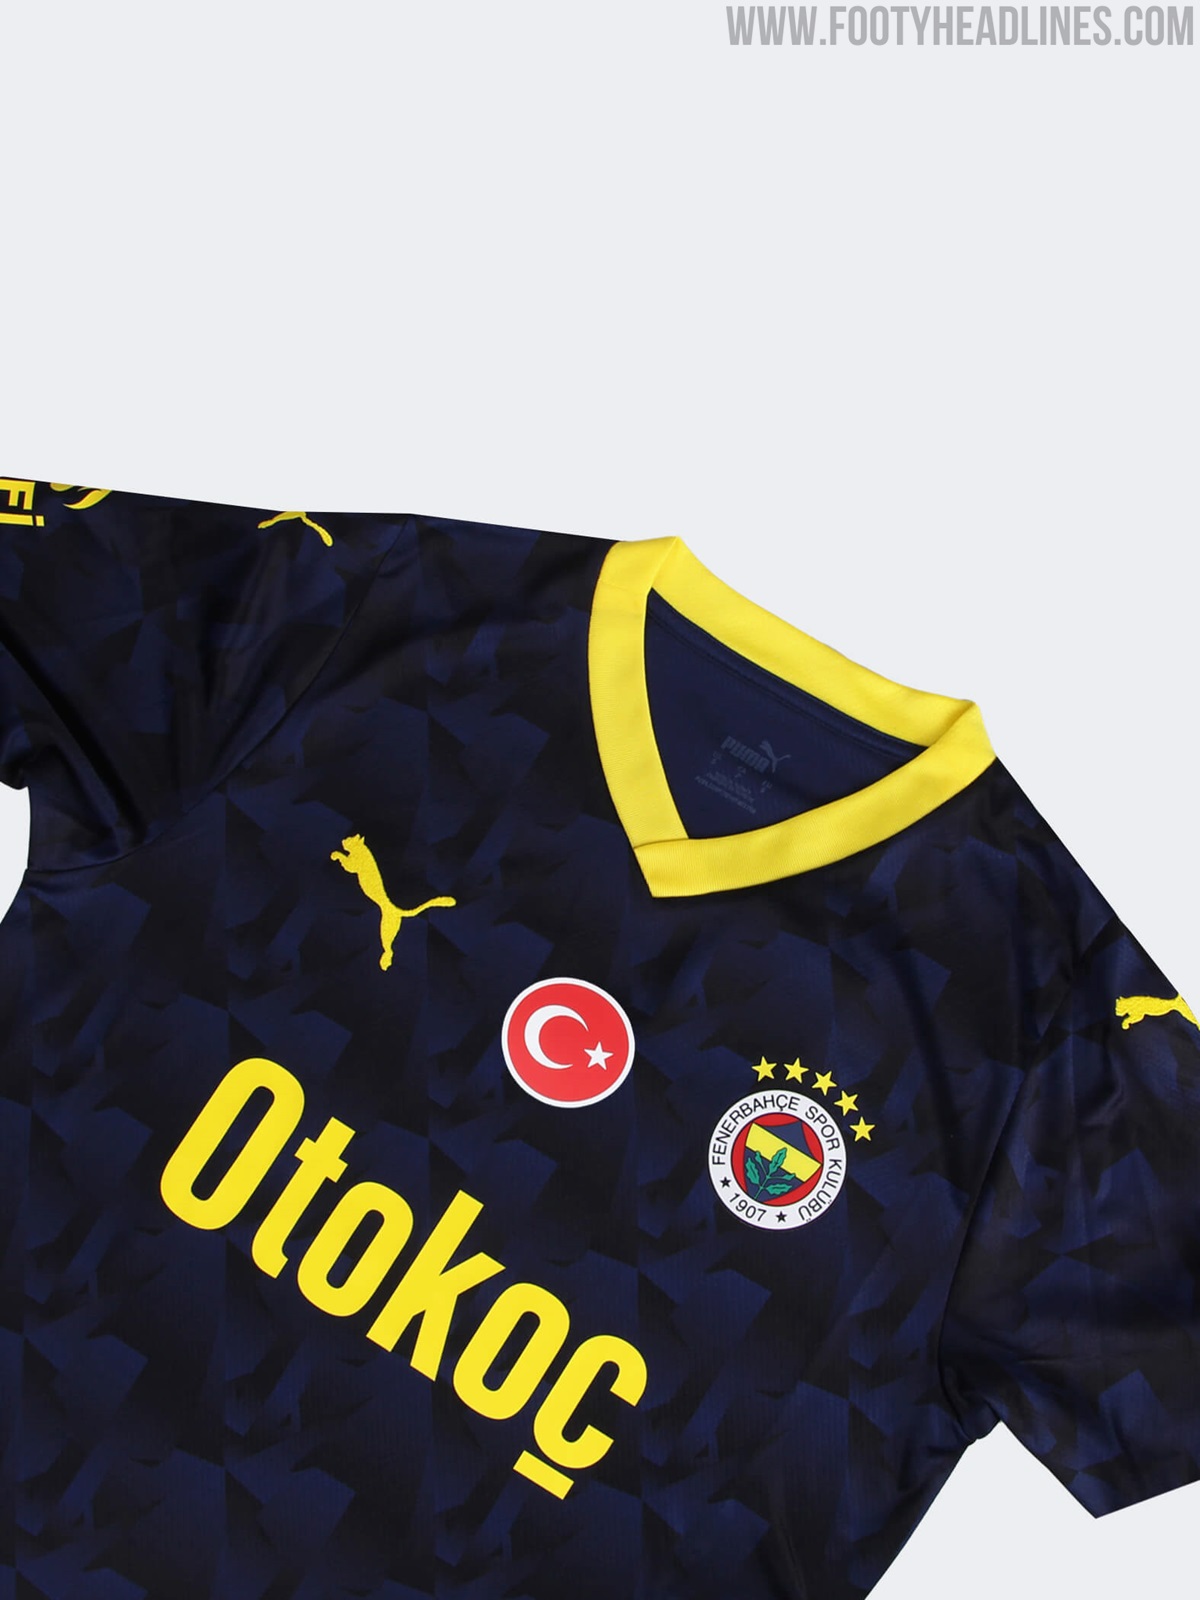 Fenerbahçe S.K. 23/24 Away Jersey Men, blue